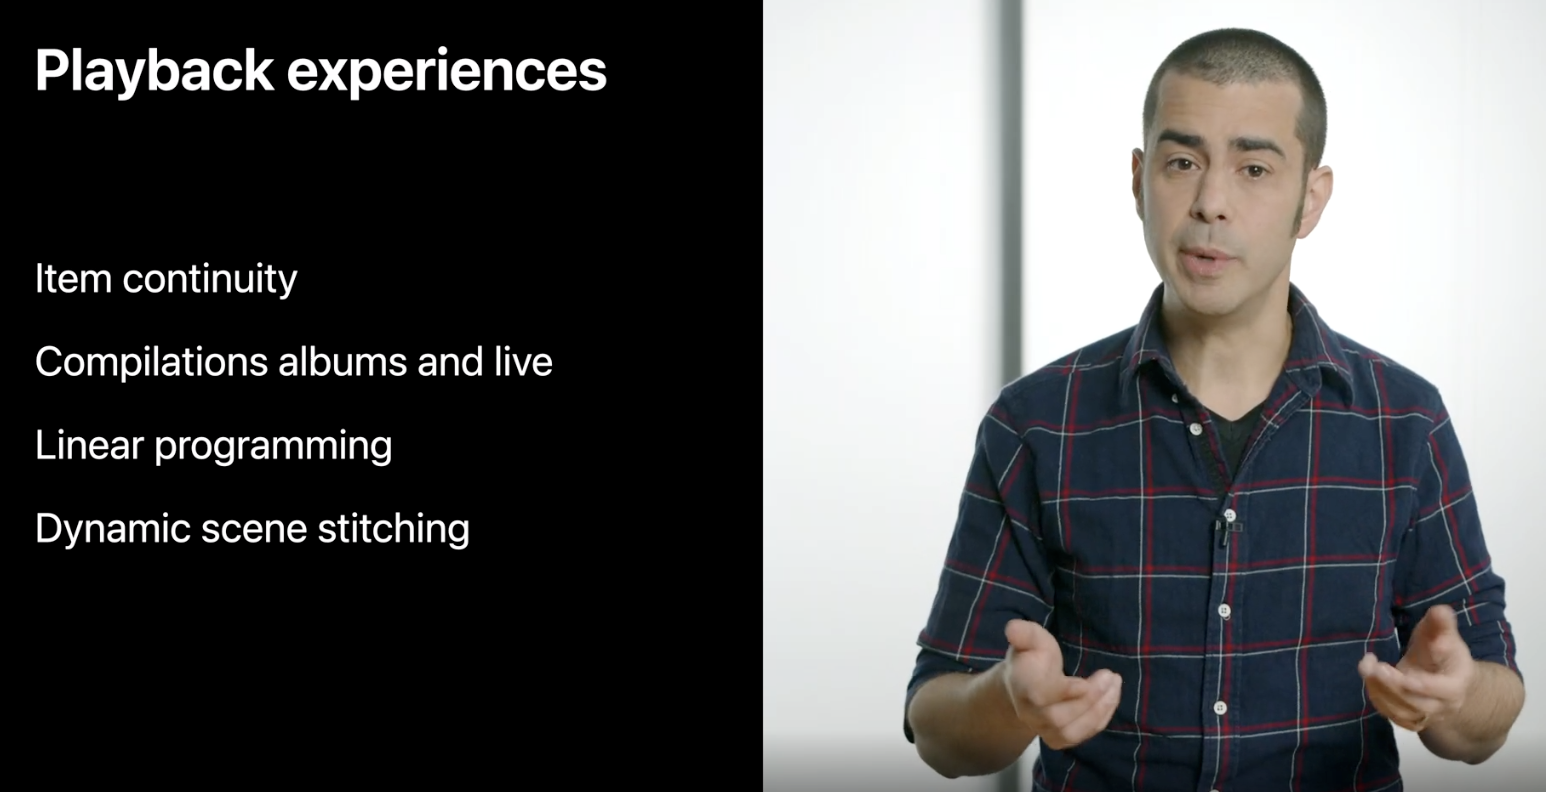 WWDC21 takeaways for video developers